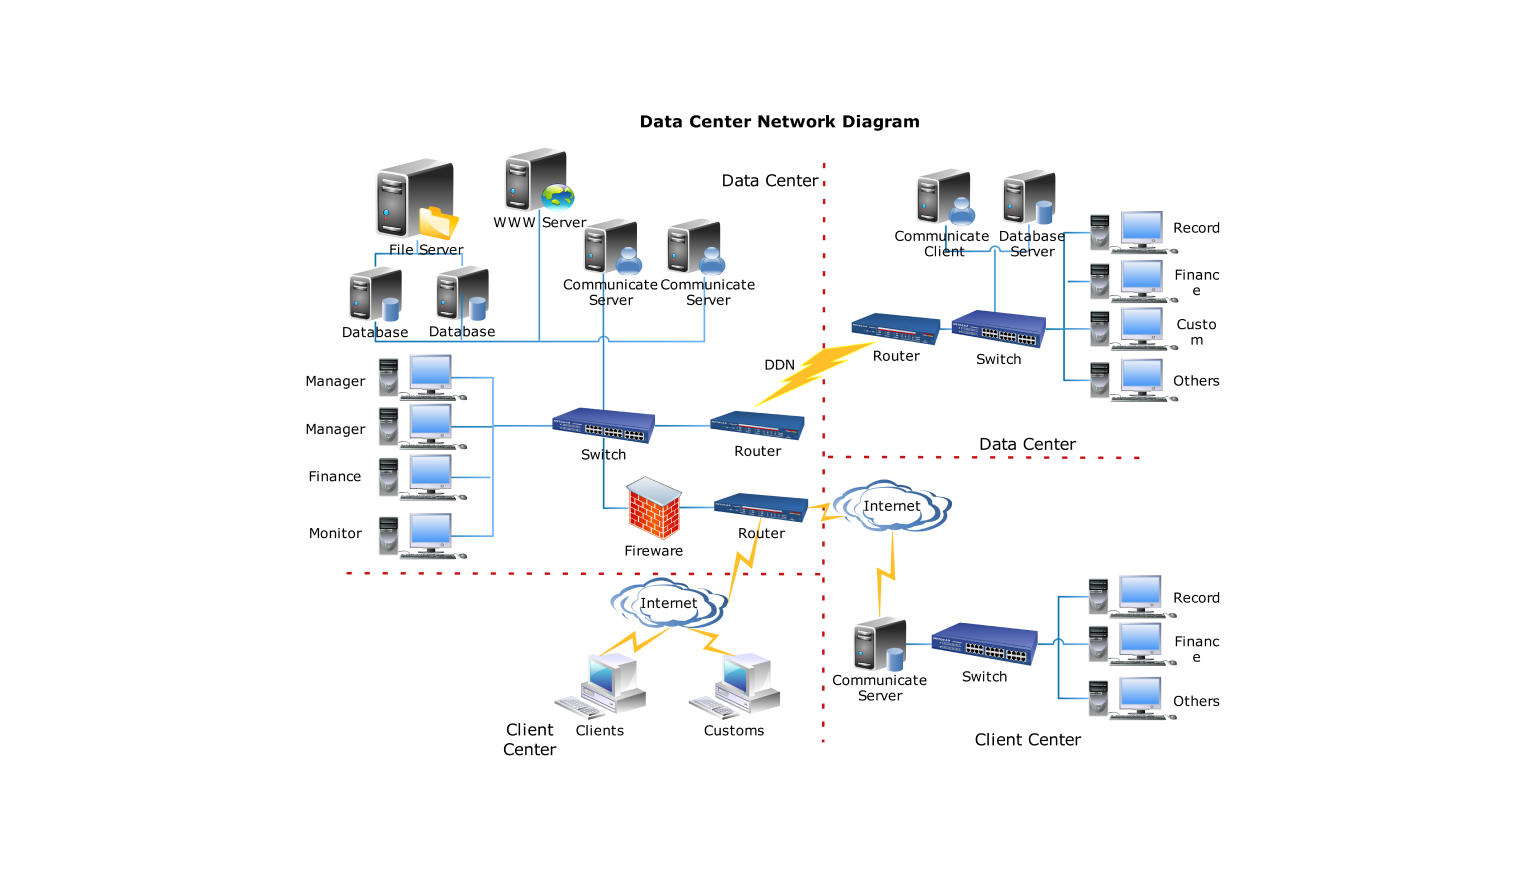 Network Diagram for data center